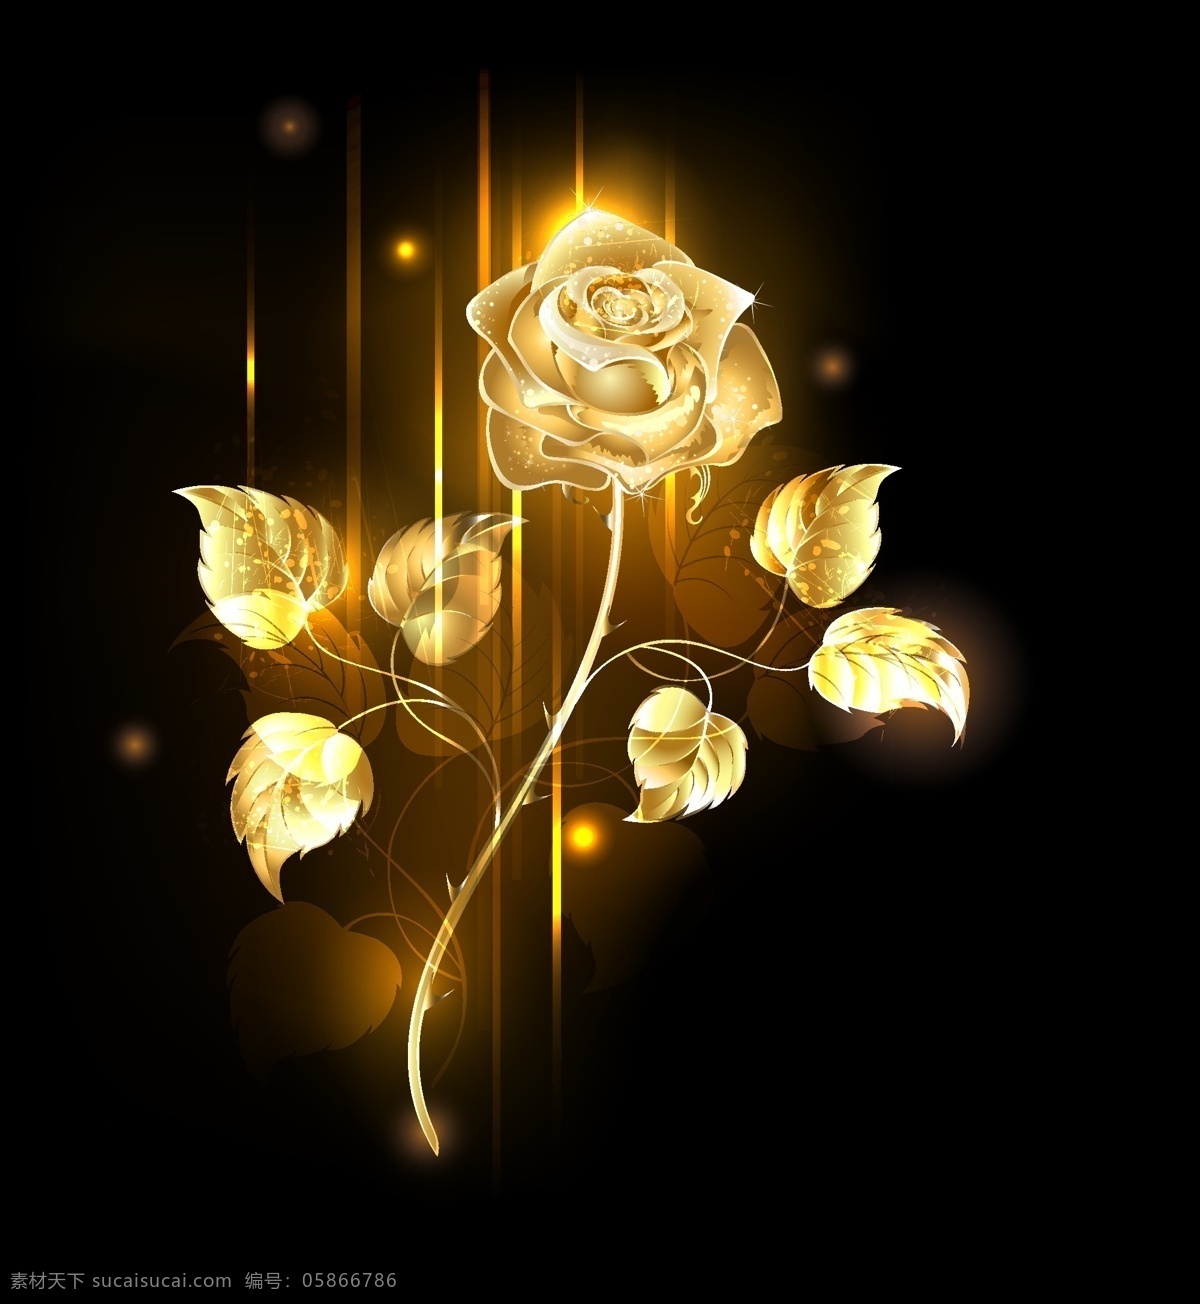 金色玫瑰 玫瑰花 立体花 3d花 定位花 衣服花 壁纸 数码印花 矢量图 花 底纹边框 其他素材